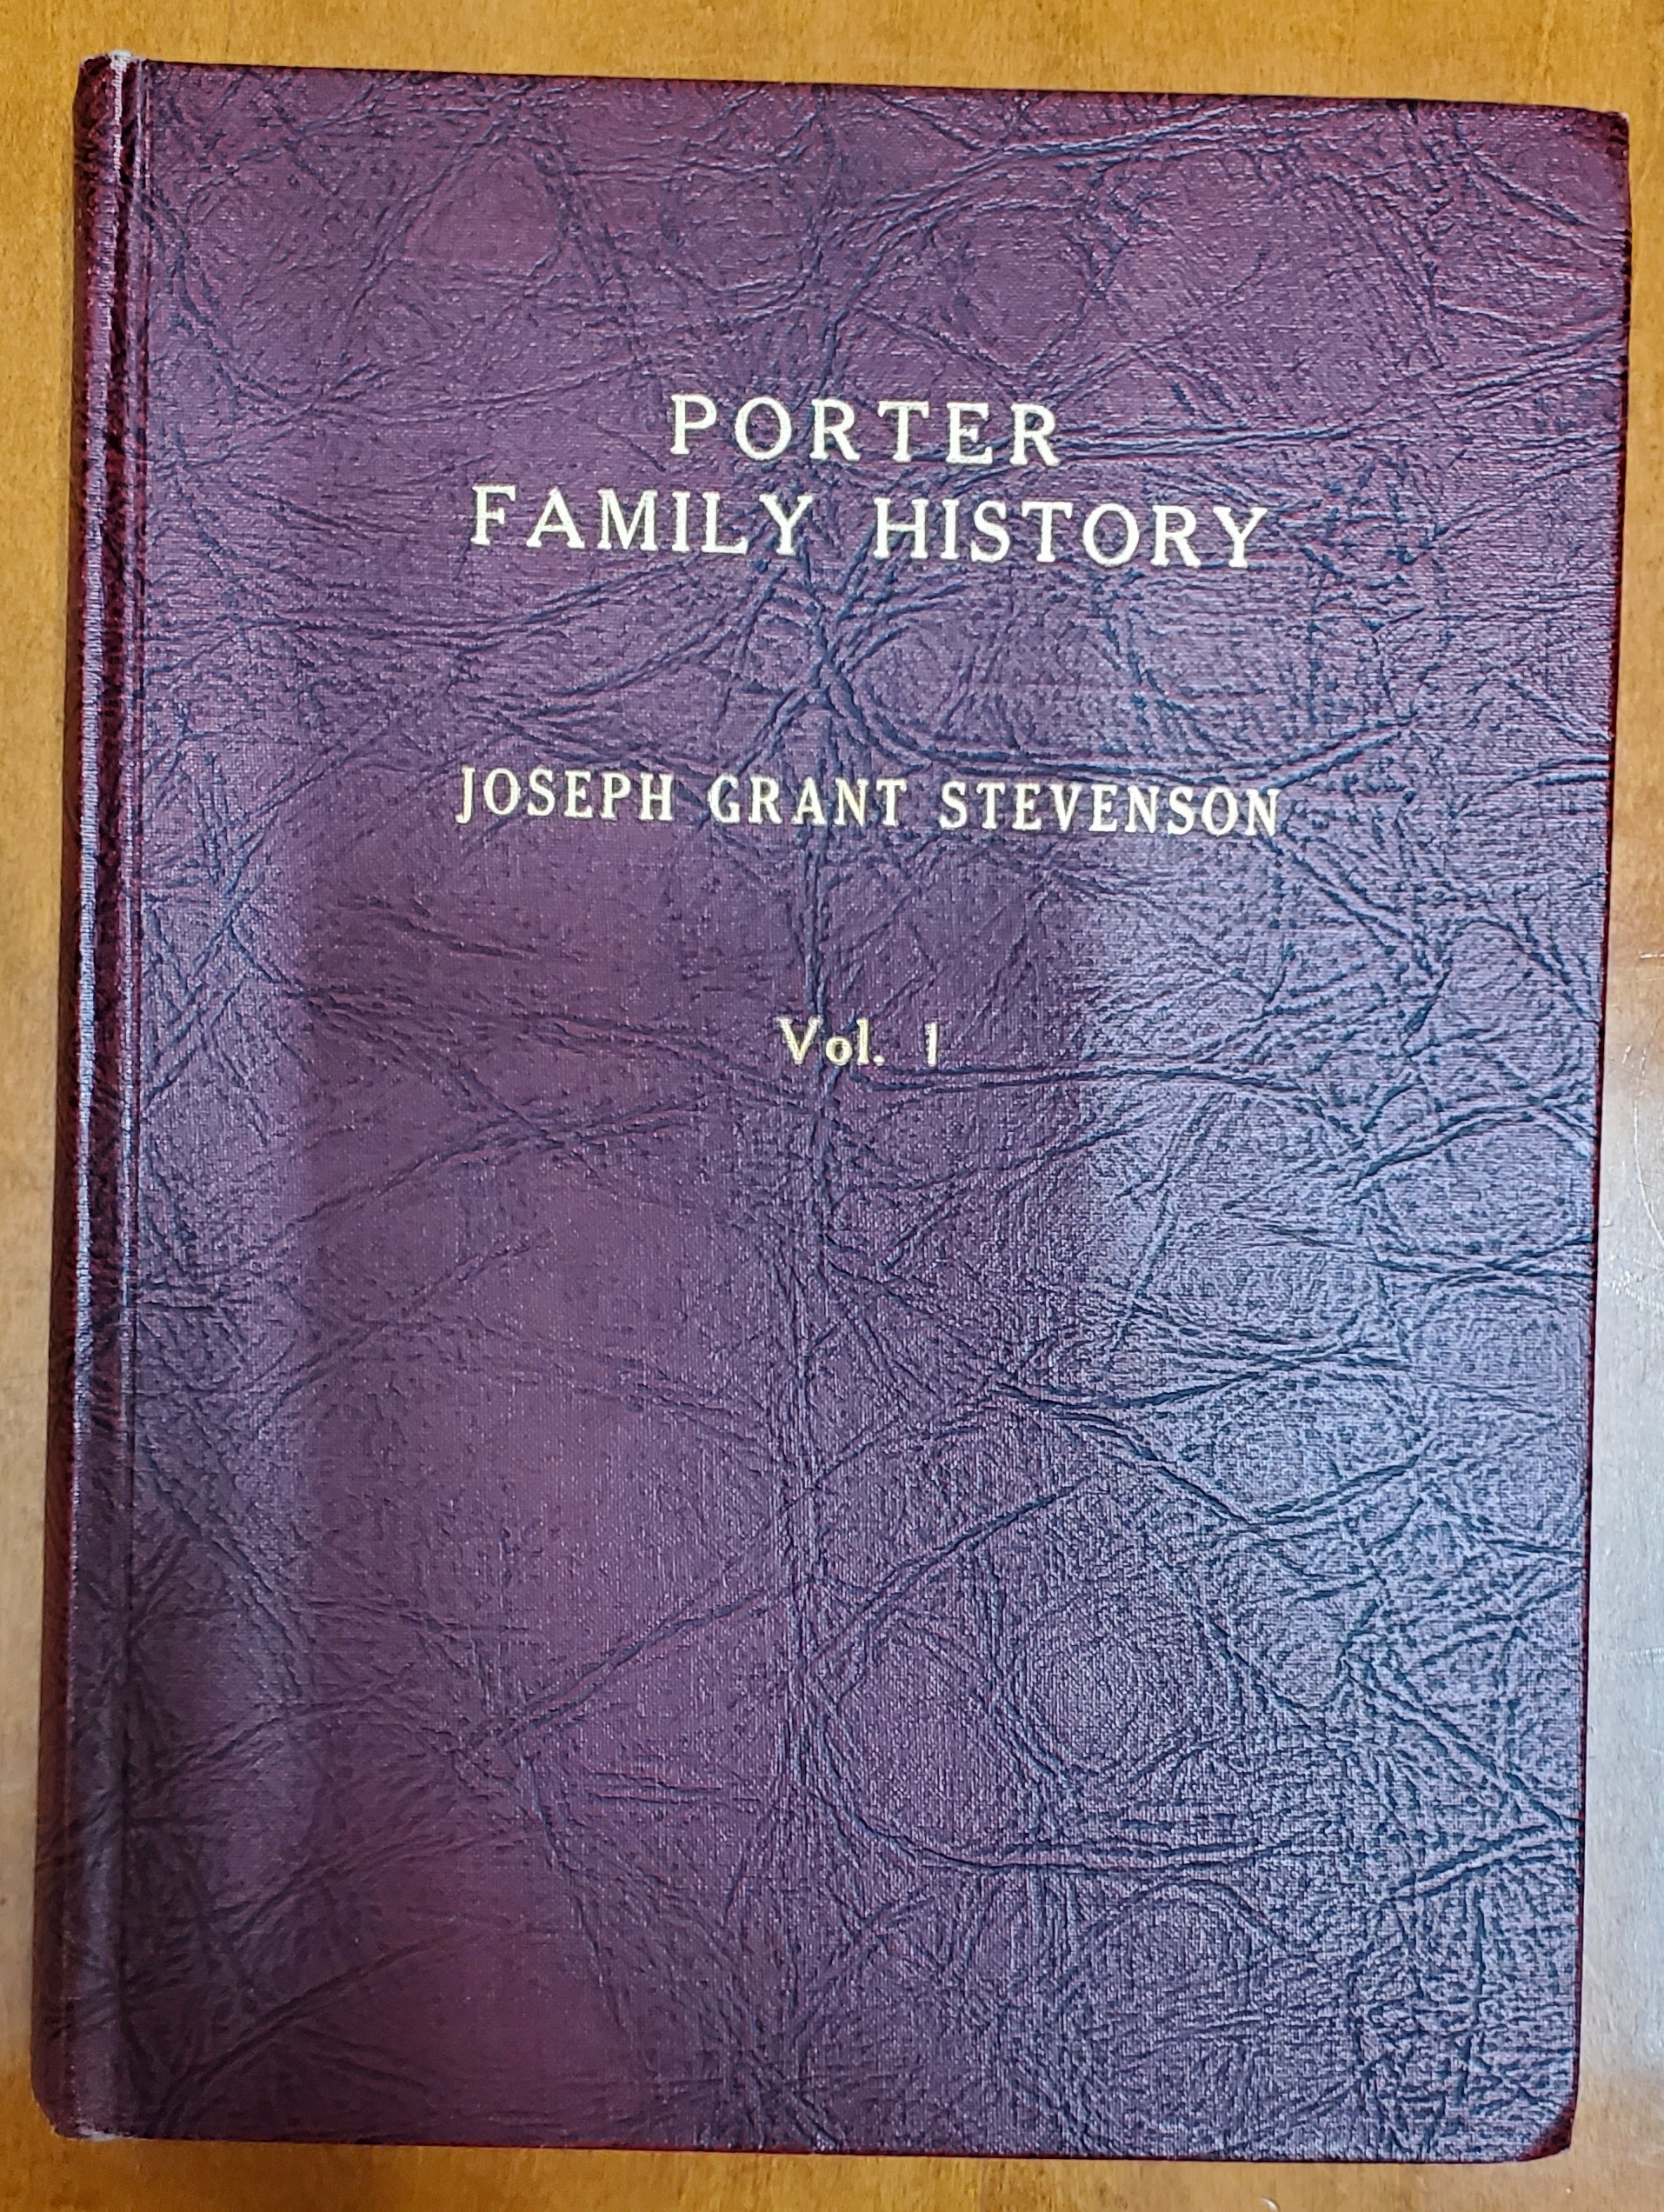 Image for Porter Family History Vol. 1 By Joseph Grant Stevenson